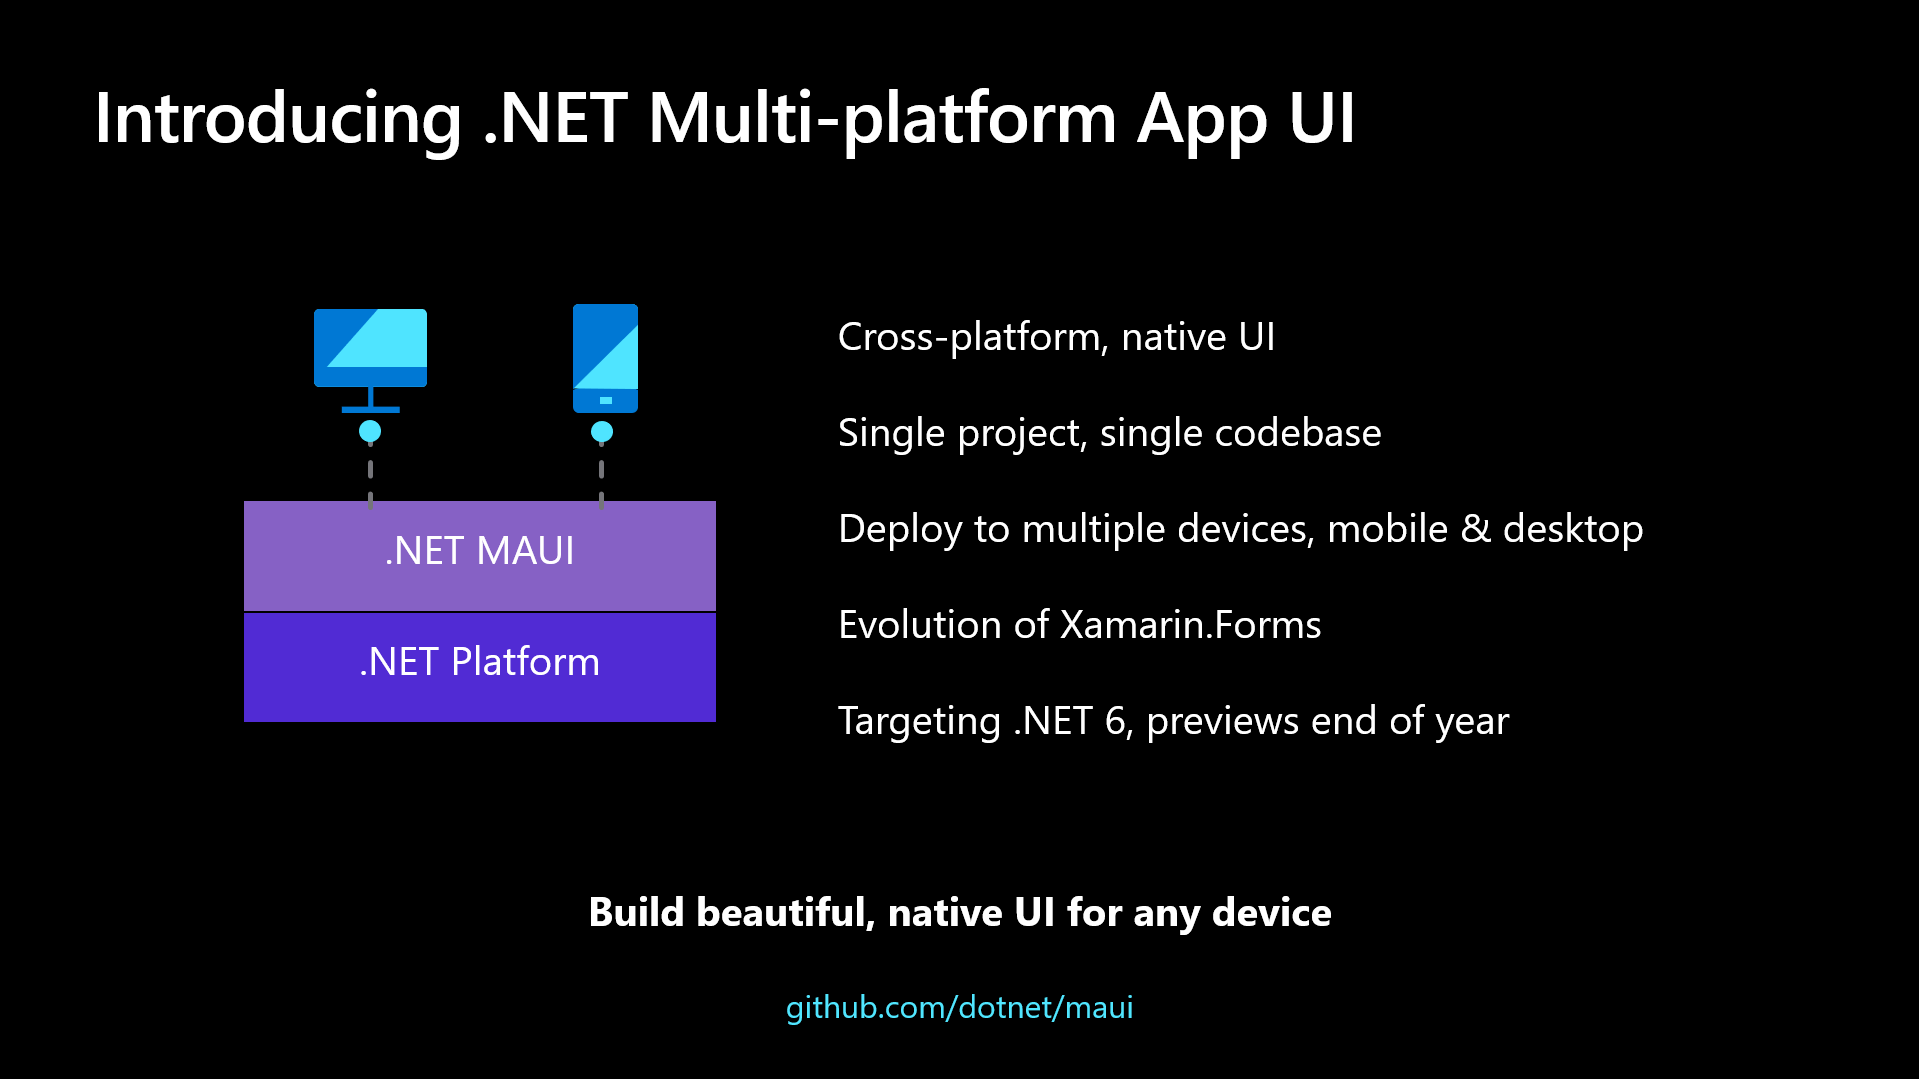 新しい MAUI フレームワーク (マルチプラットフォーム アプリ UI) - .NET 6.0